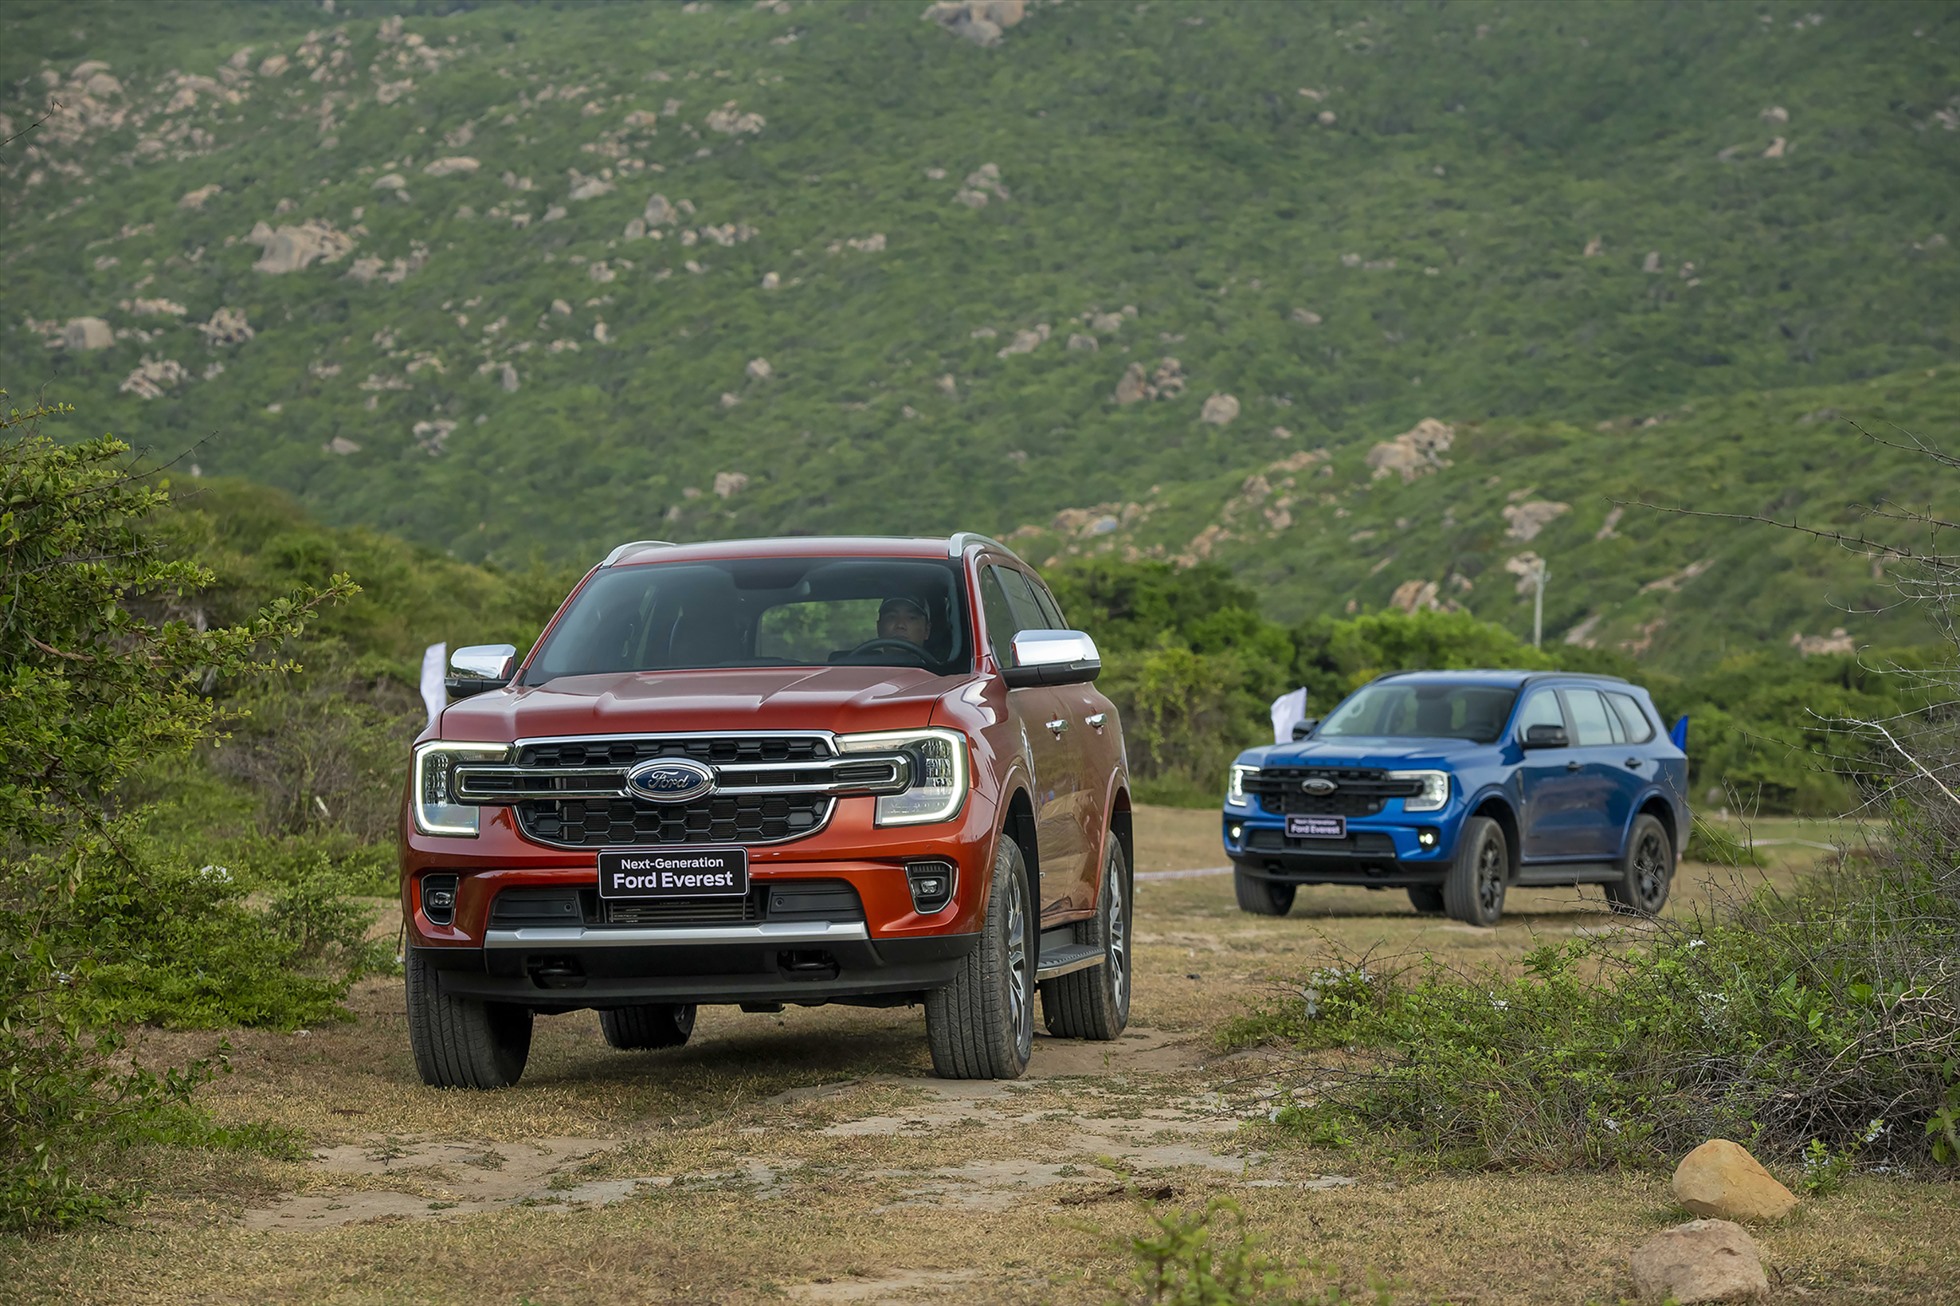 Lần thứ 2 trong năm 2023, Ford Everest cùng với Ranger góp mặt trong Top 10 ô tô bán chạy nhất Việt Nam. Doanh số bán mẫu xe này đạt 1.088 xe trong tháng 3.2023, tăng 437 xe so với tháng 2.2023. Mẫu xe này tiếp tục là đại diện duy nhất của phân khúc xe SUV 7 chỗ góp mặt trong danh sách này. Ford Everest nhập khẩu từ Thái Lan, hiện đang phân phối tại Việt Nam 5 phiên bản đi kèm giá bán từ 1,099 - 1,506 tỉ đồng. Ảnh: Ford.